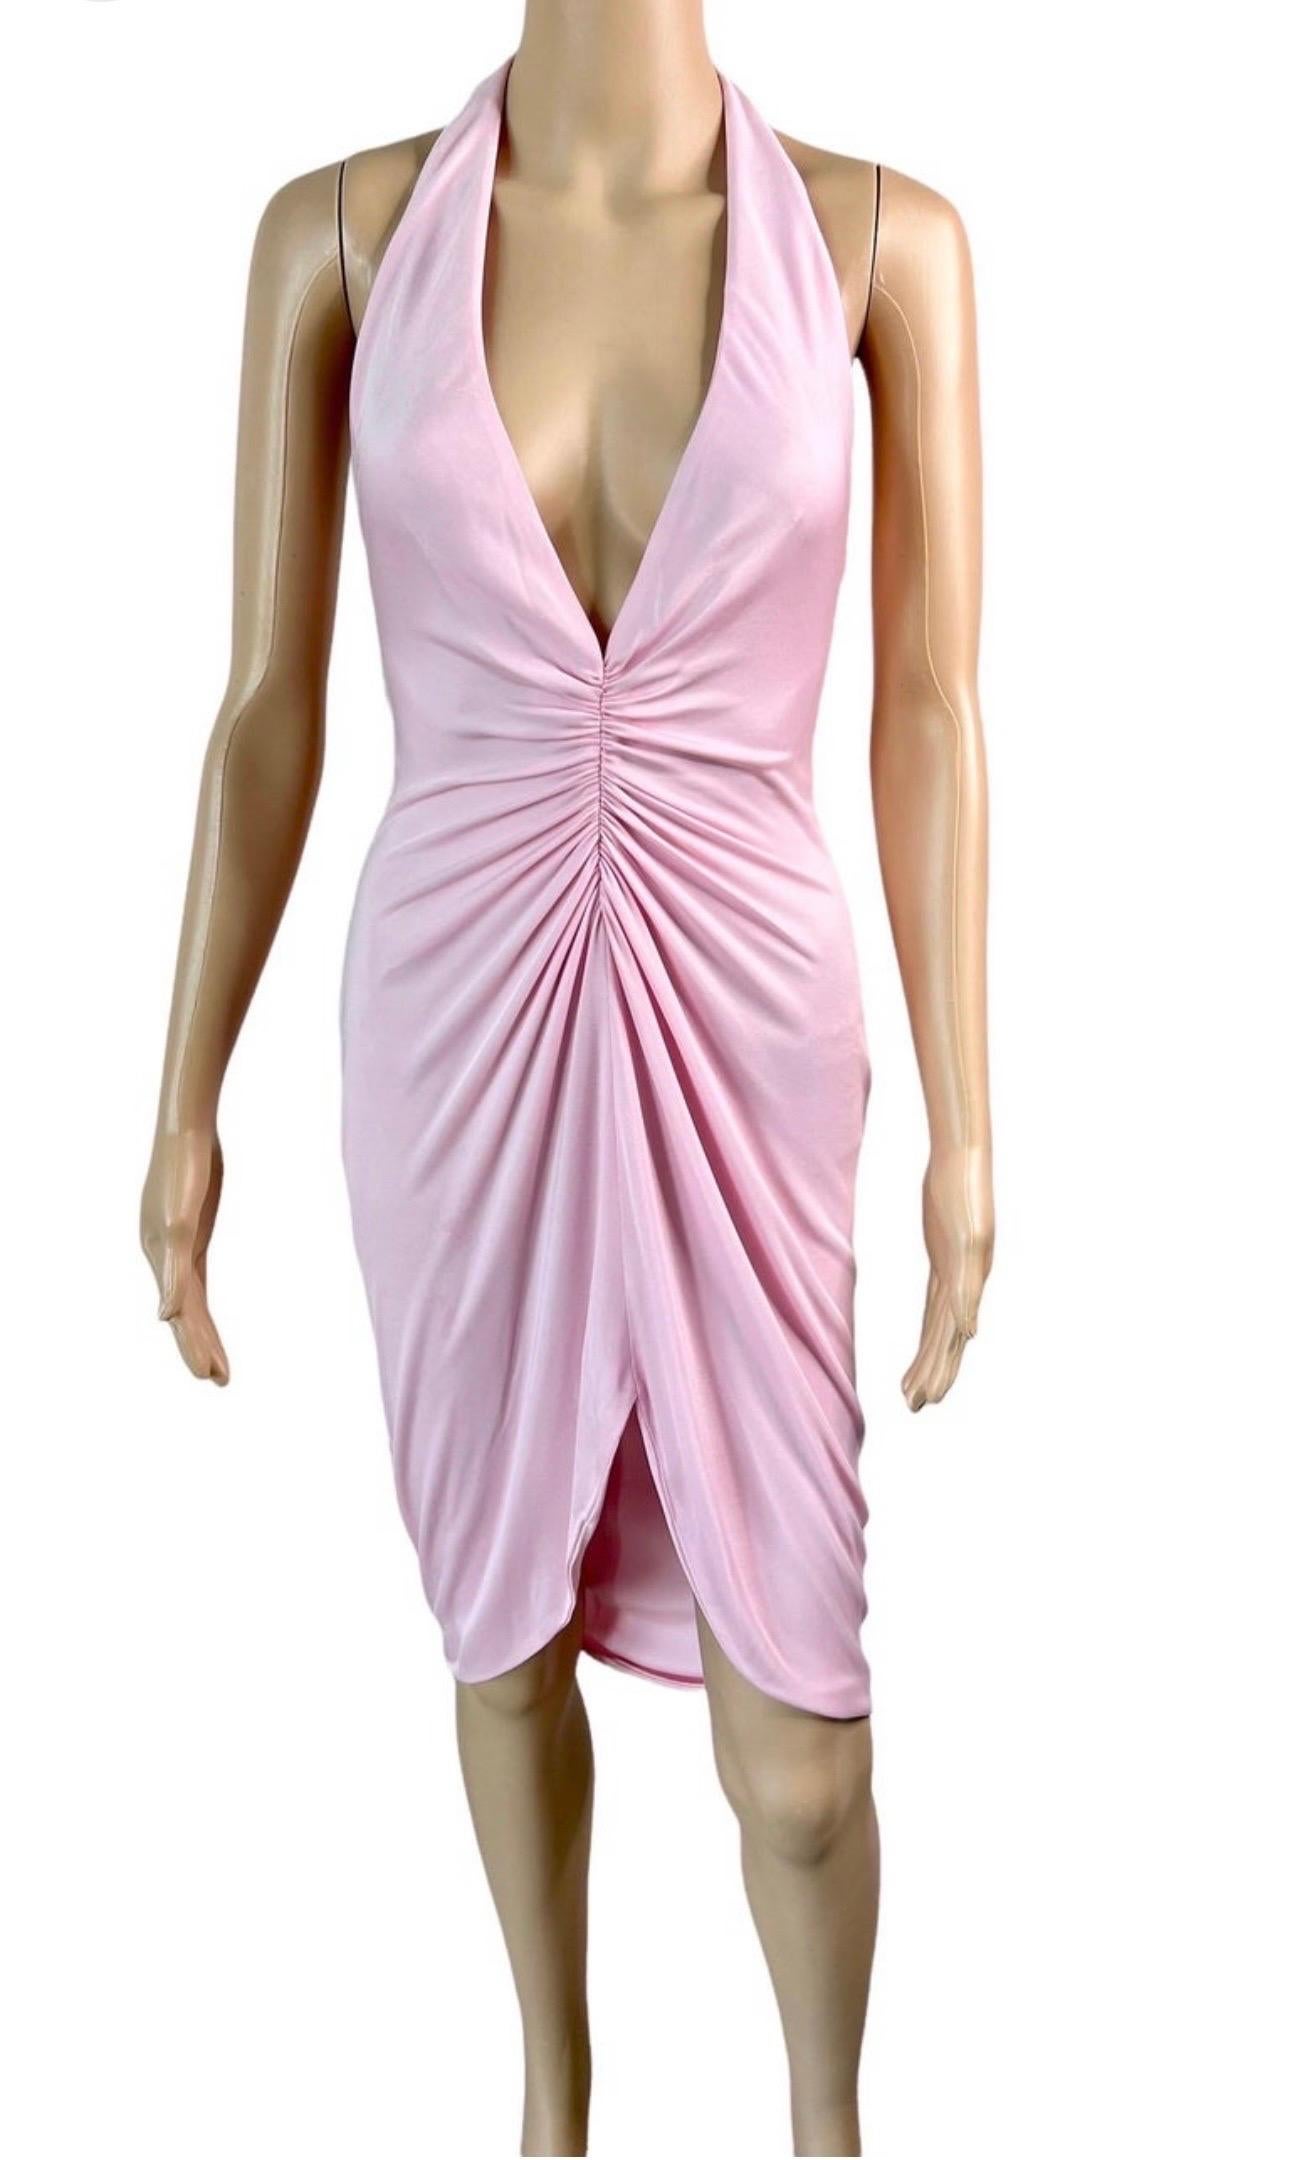 Versace S/S 2005 Laufsteg Tief ausgeschnittenes, gerafftes Kleid mit offenem Rücken in Rosa IT 40

Look 1 aus der Spring 2005 Collection.

Wie bei Miley Cyrus von OpulentAddict und JLo gesehen